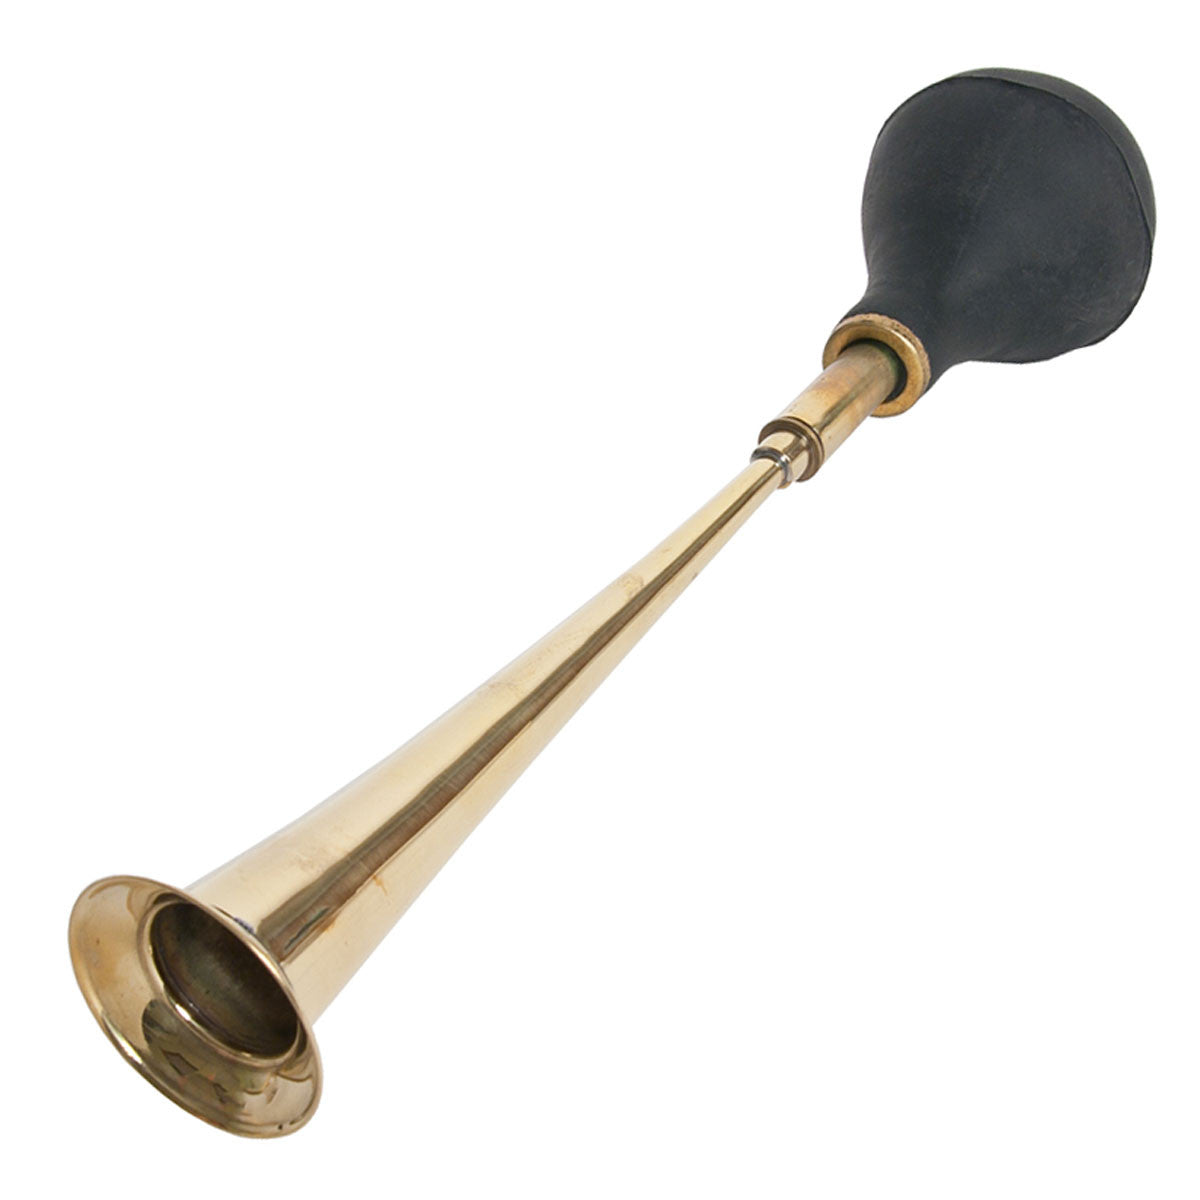 DOBANI Bulb Horn, Large Single Bell Horns DOBANI   